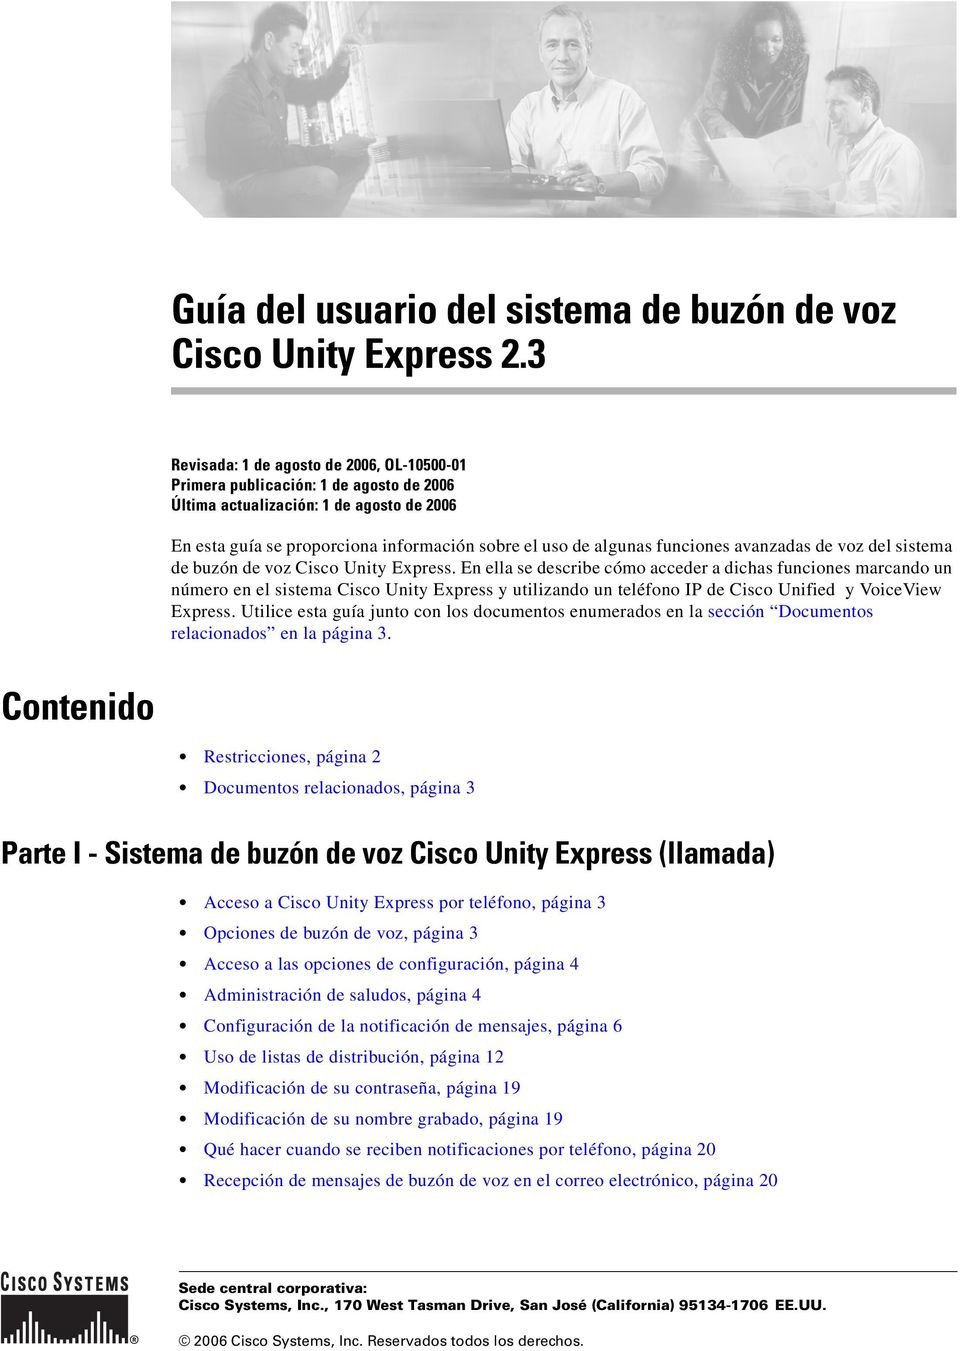 funciones avanzadas de voz del sistema de buzón de voz Cisco Unity Express.